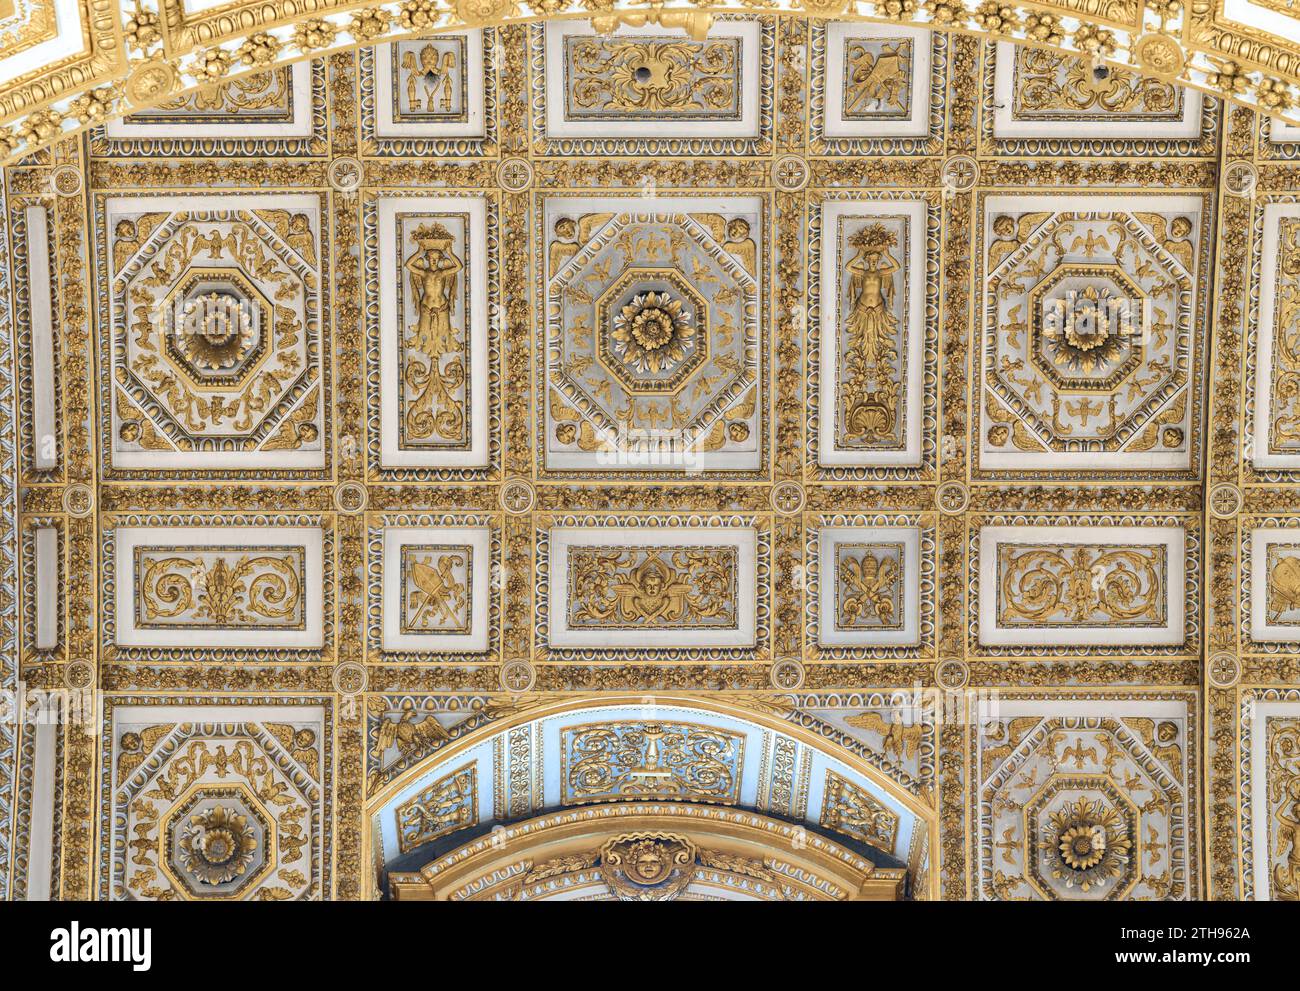 Illustrations en mosaïque sur le dessous d'un plafond dans la basilique Saint-Pierre, Vatican, Rome, Italie. Banque D'Images